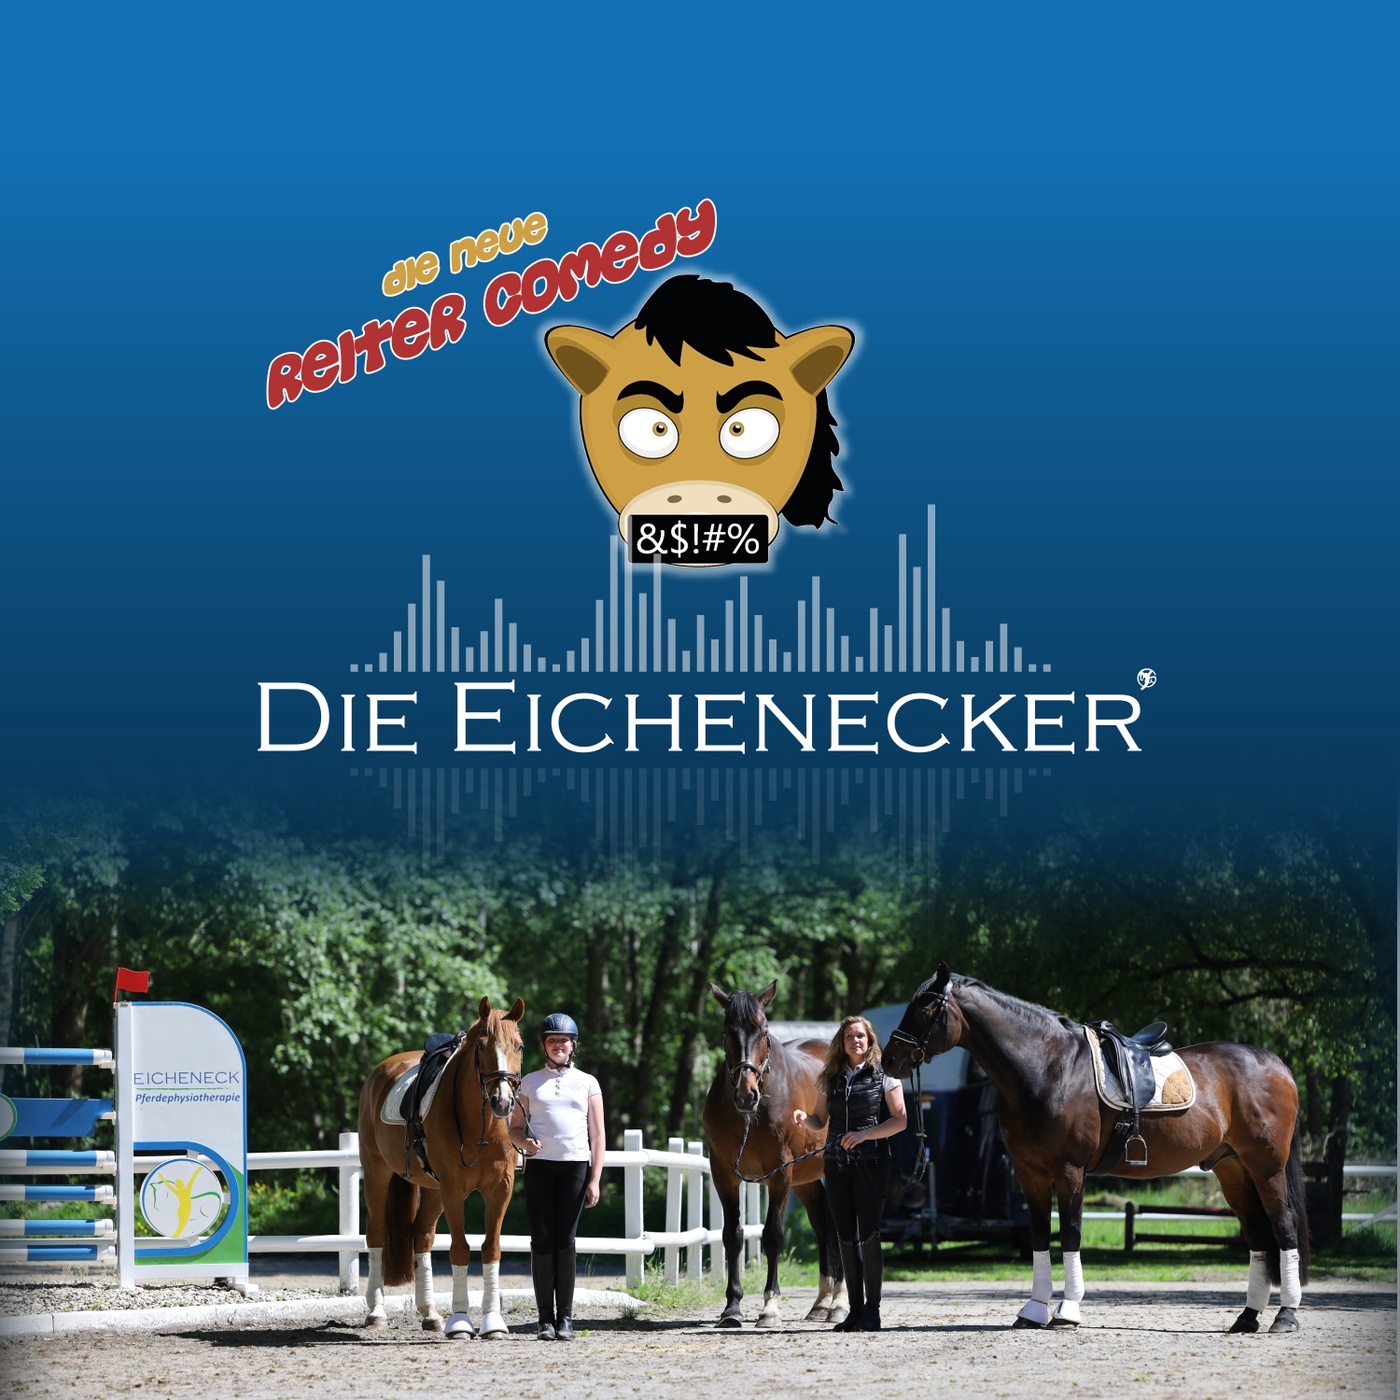 Die Eichenecker Reitercomedy | Kurioses aus der Pferdewelt